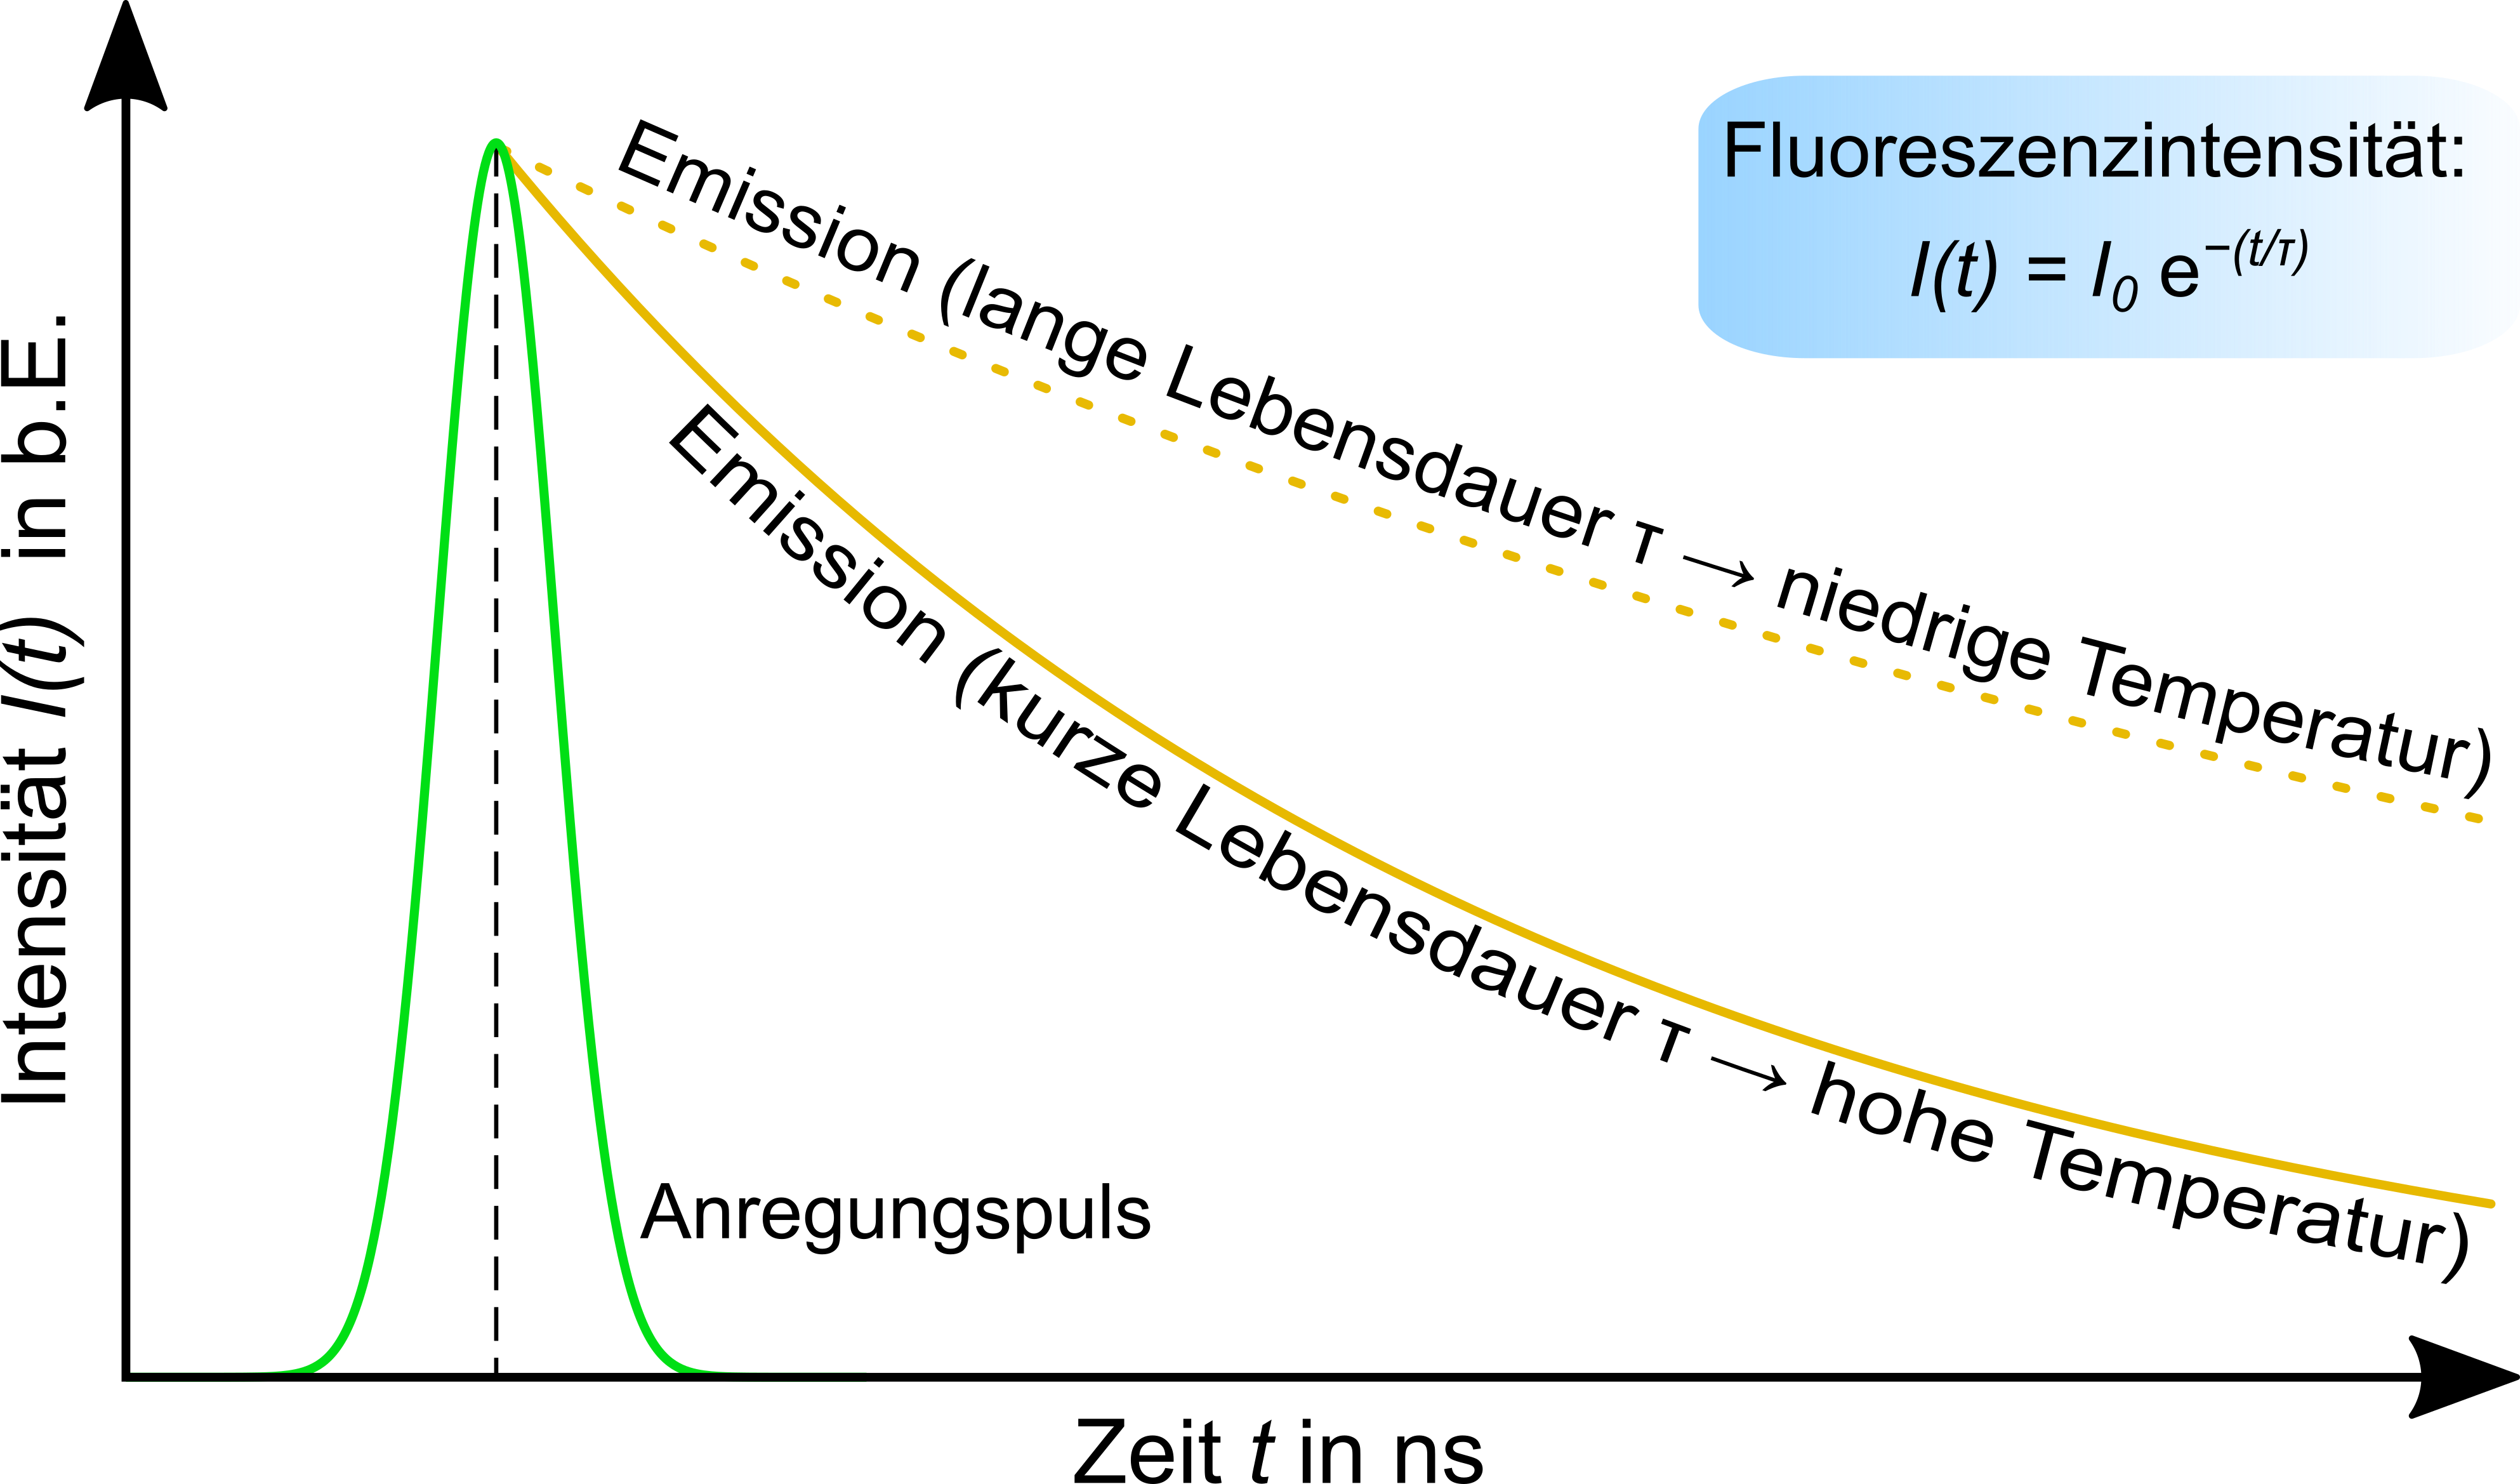 Ortsaufgelöste Messung der Temperatur in Flüssigkeiten mittels konfokaler Fluoreszenzmikroskopie